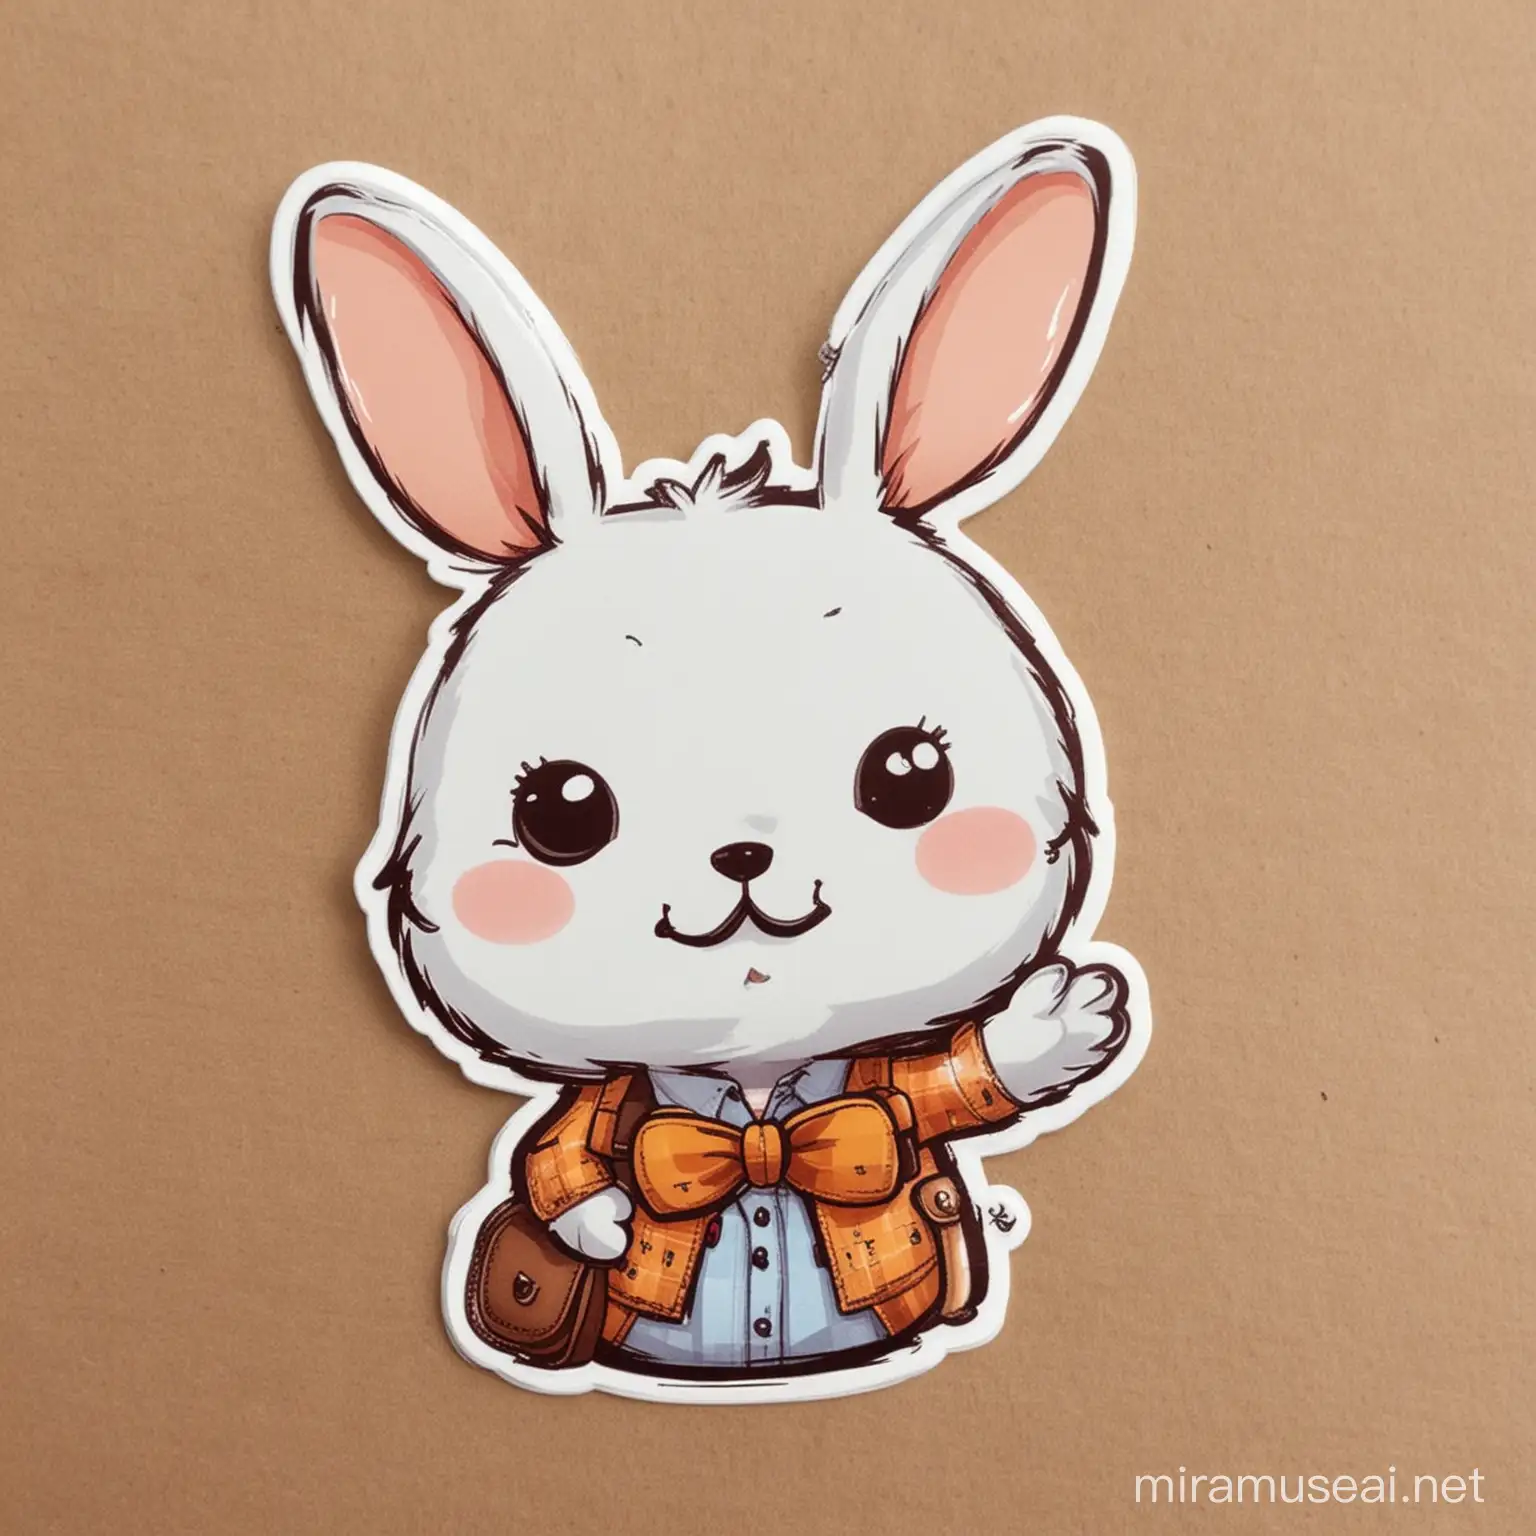 Cartoon  Rabbit  sticker teacher